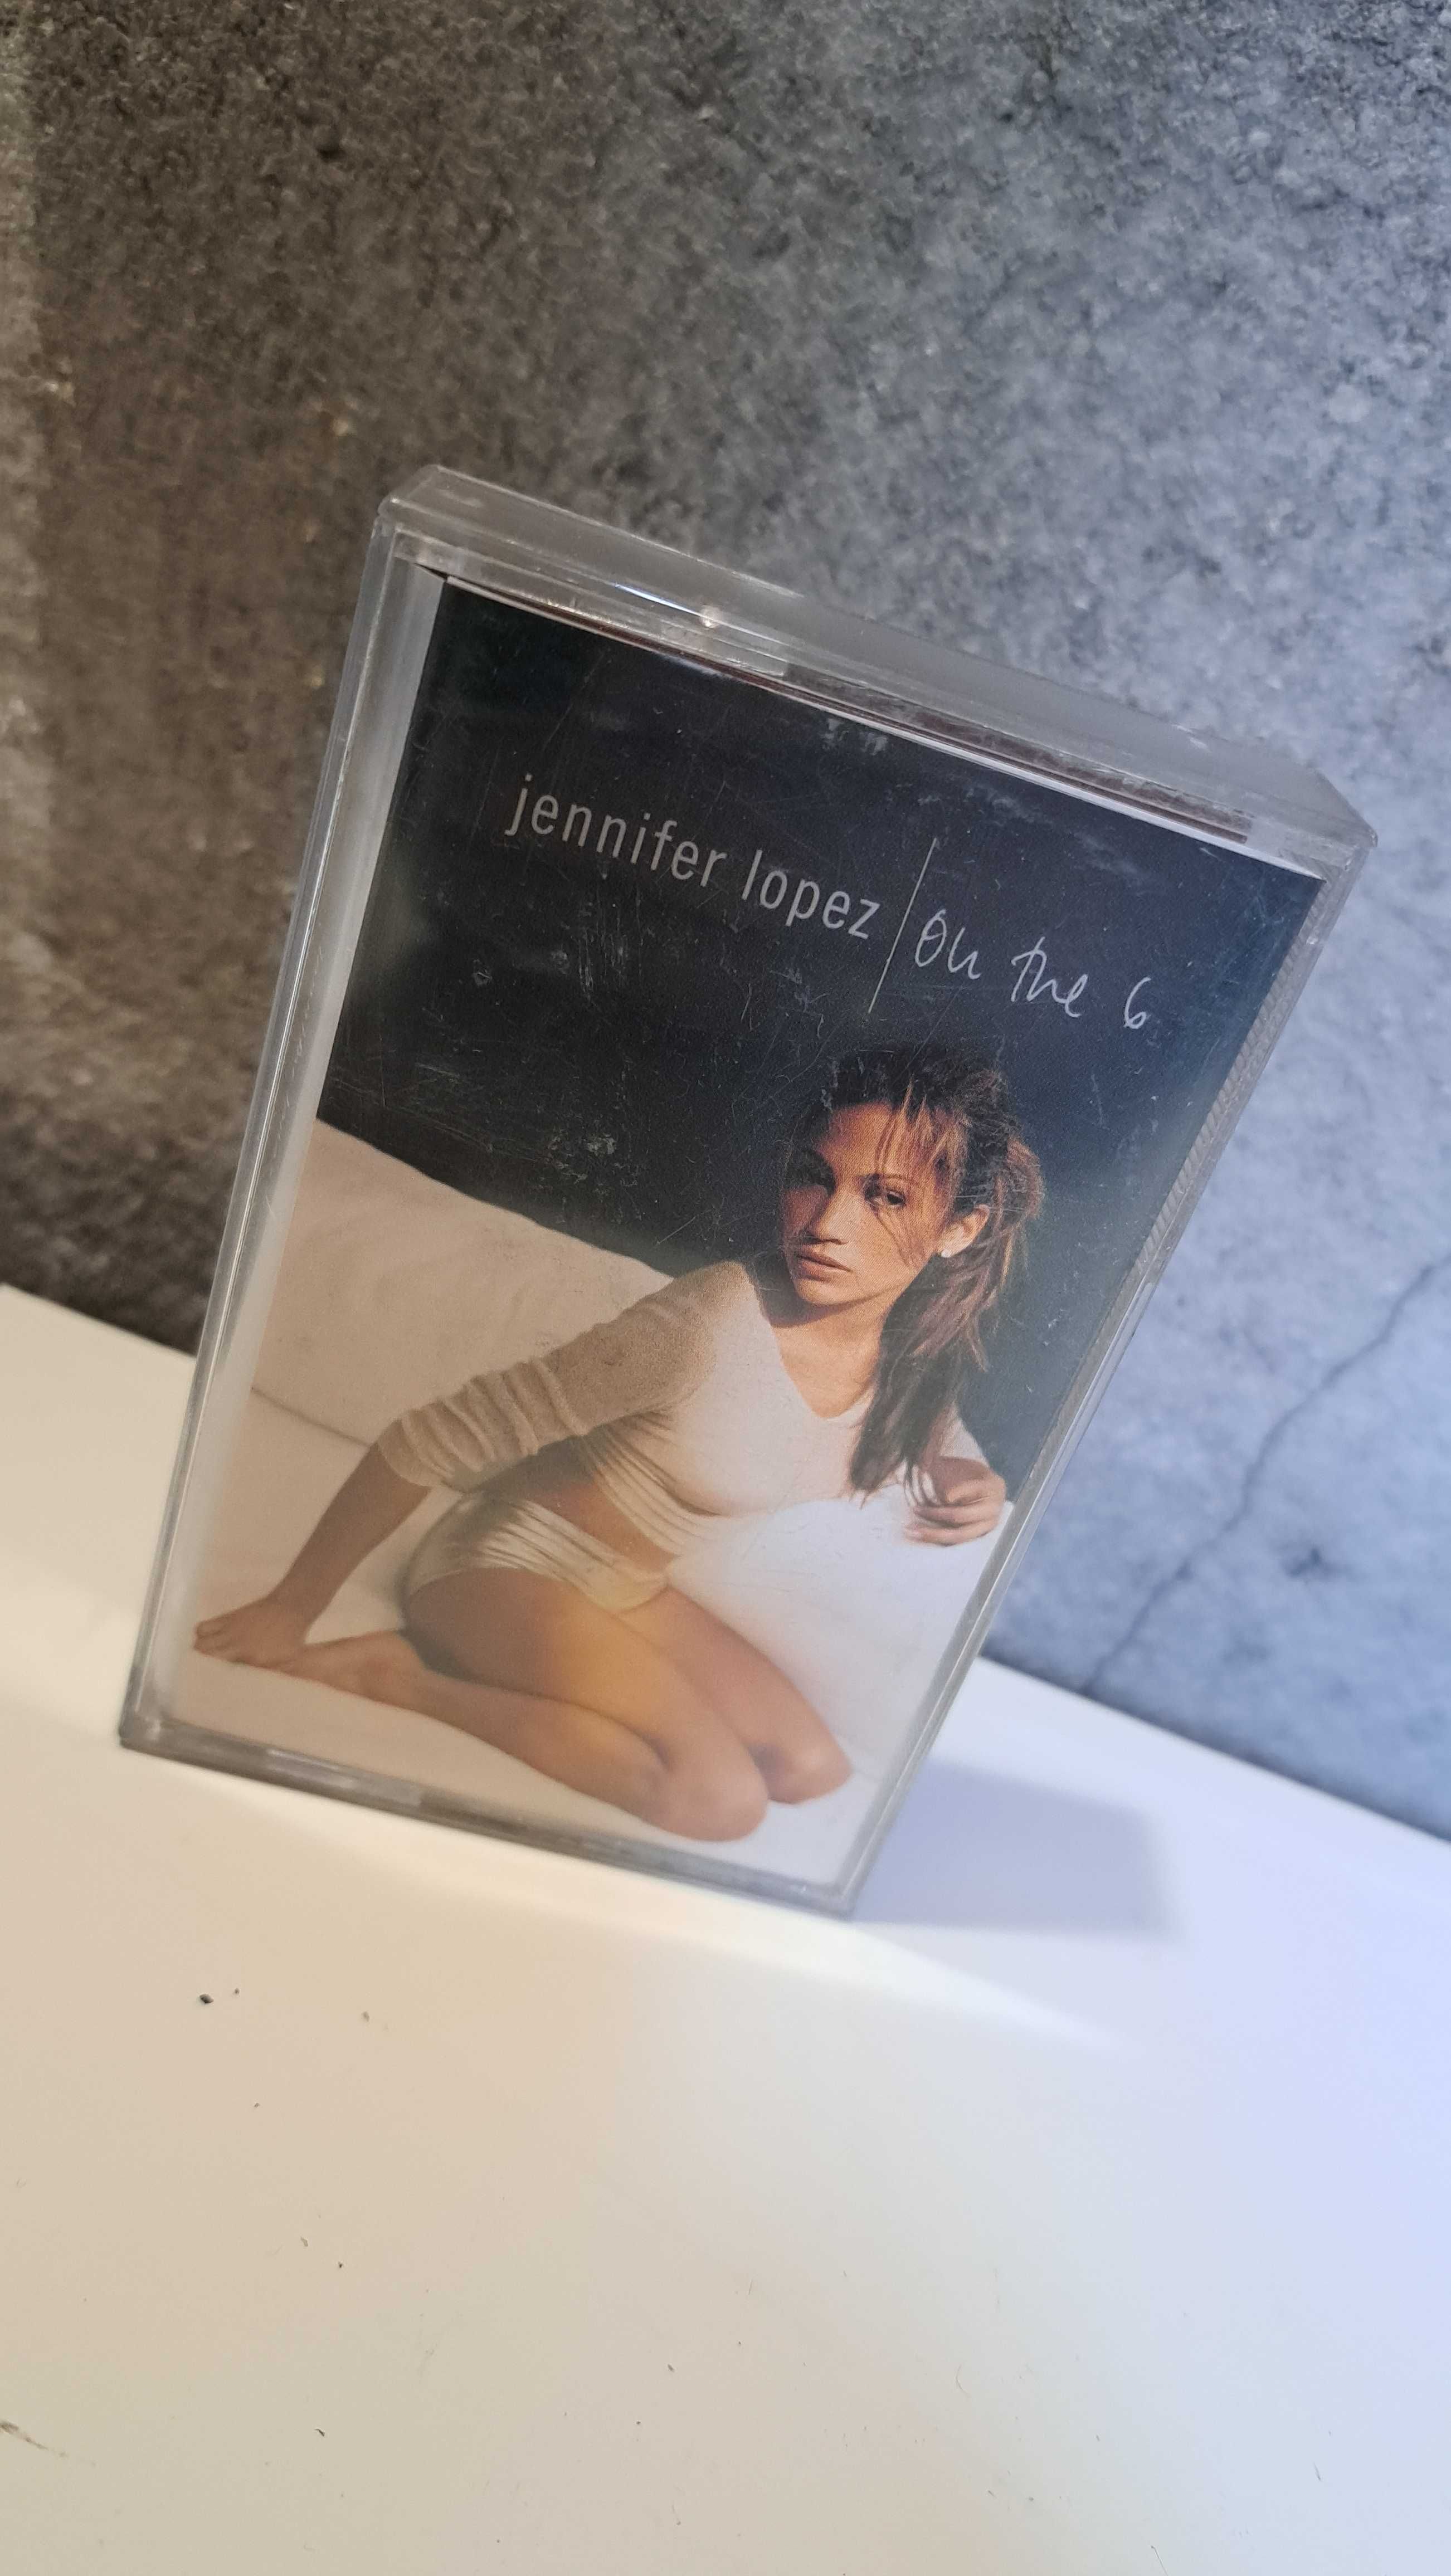 Jenifer Lopez JL on the 6 kaseta audio